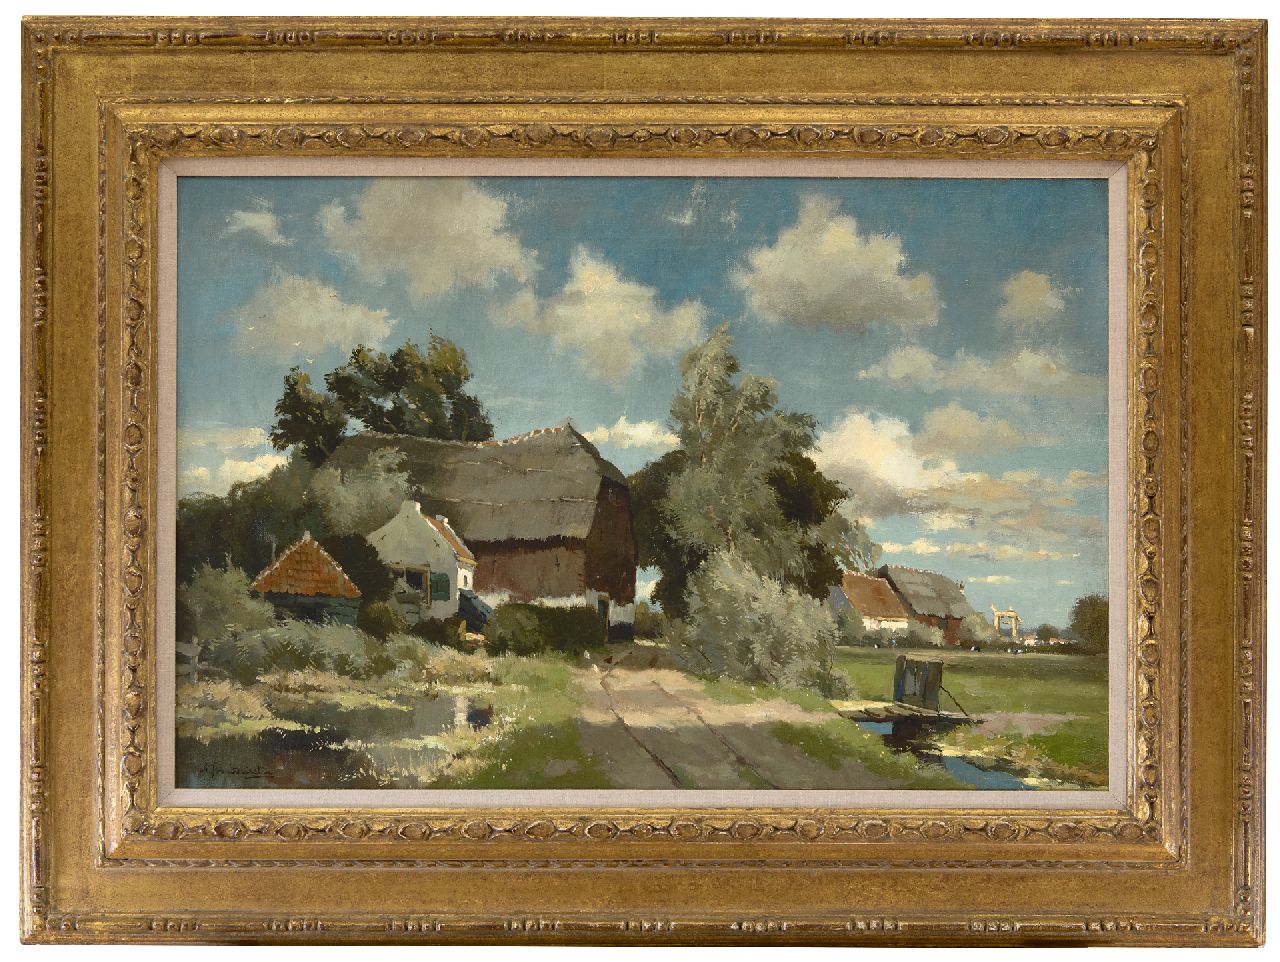 Driesten A.J. van | Arend Jan van Driesten | Schilderijen te koop aangeboden | Boerenlandschap, olieverf op doek 40,5 x 61,5 cm, gesigneerd linksonder